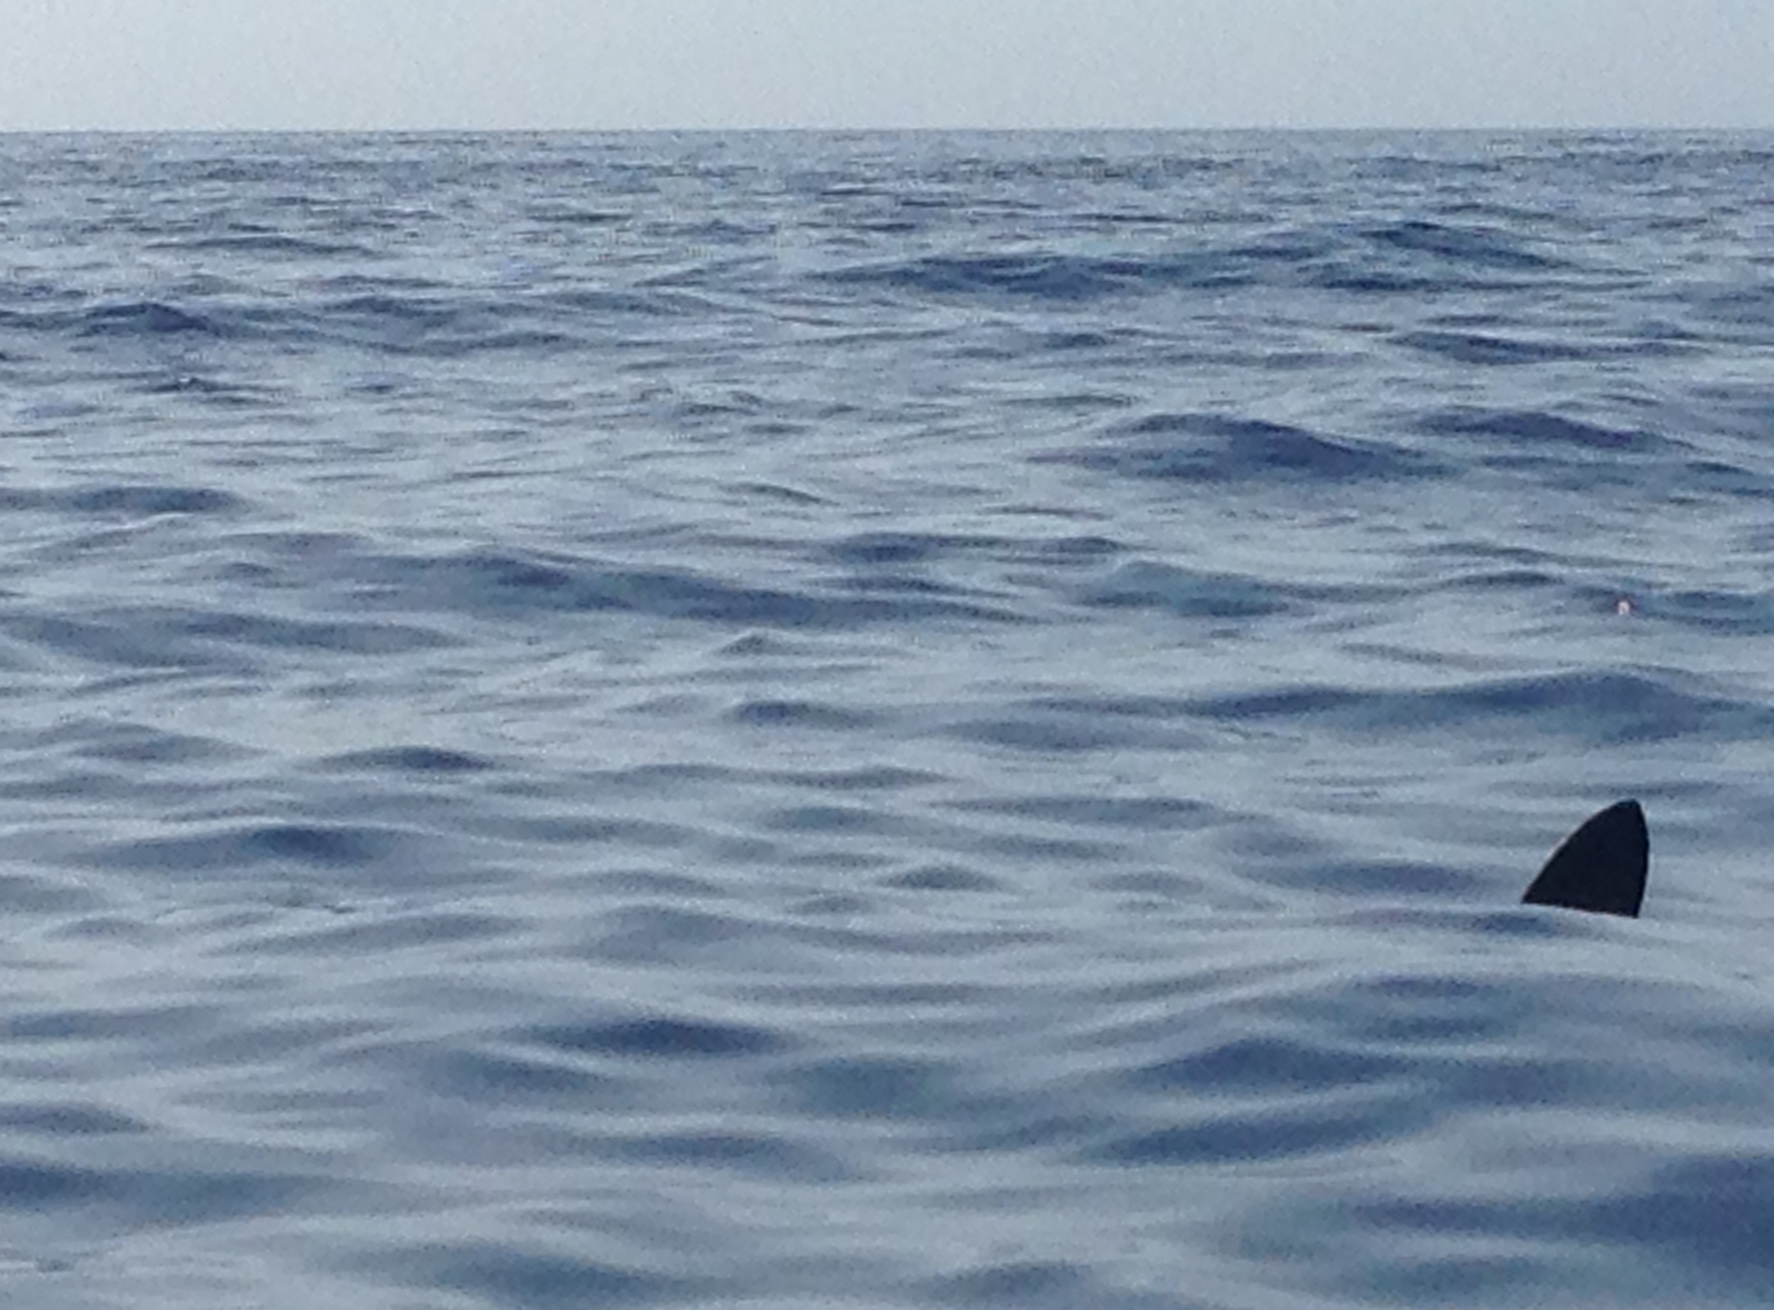 Kajaktour vor La Gomera: Begegnung mit einem Hai